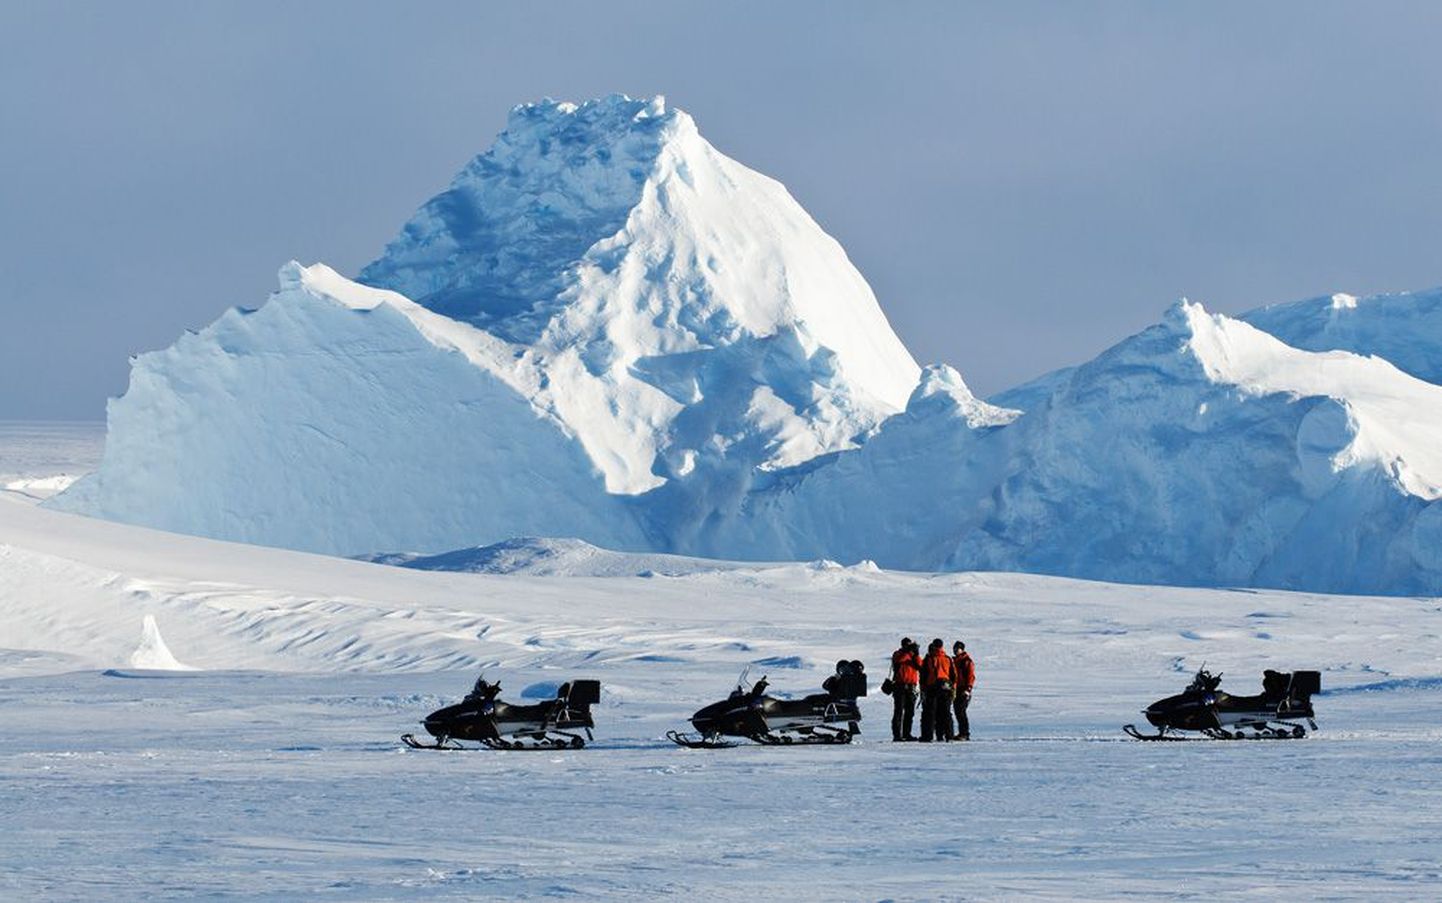 Karm vaatepilt: lõunapoolkera suvel mootorsaanidega Antarktika rannikul šelfiliustiku kokkukukkunud serva ees. Serva kõrgeim tipp küünib umbes 30 meetrini.